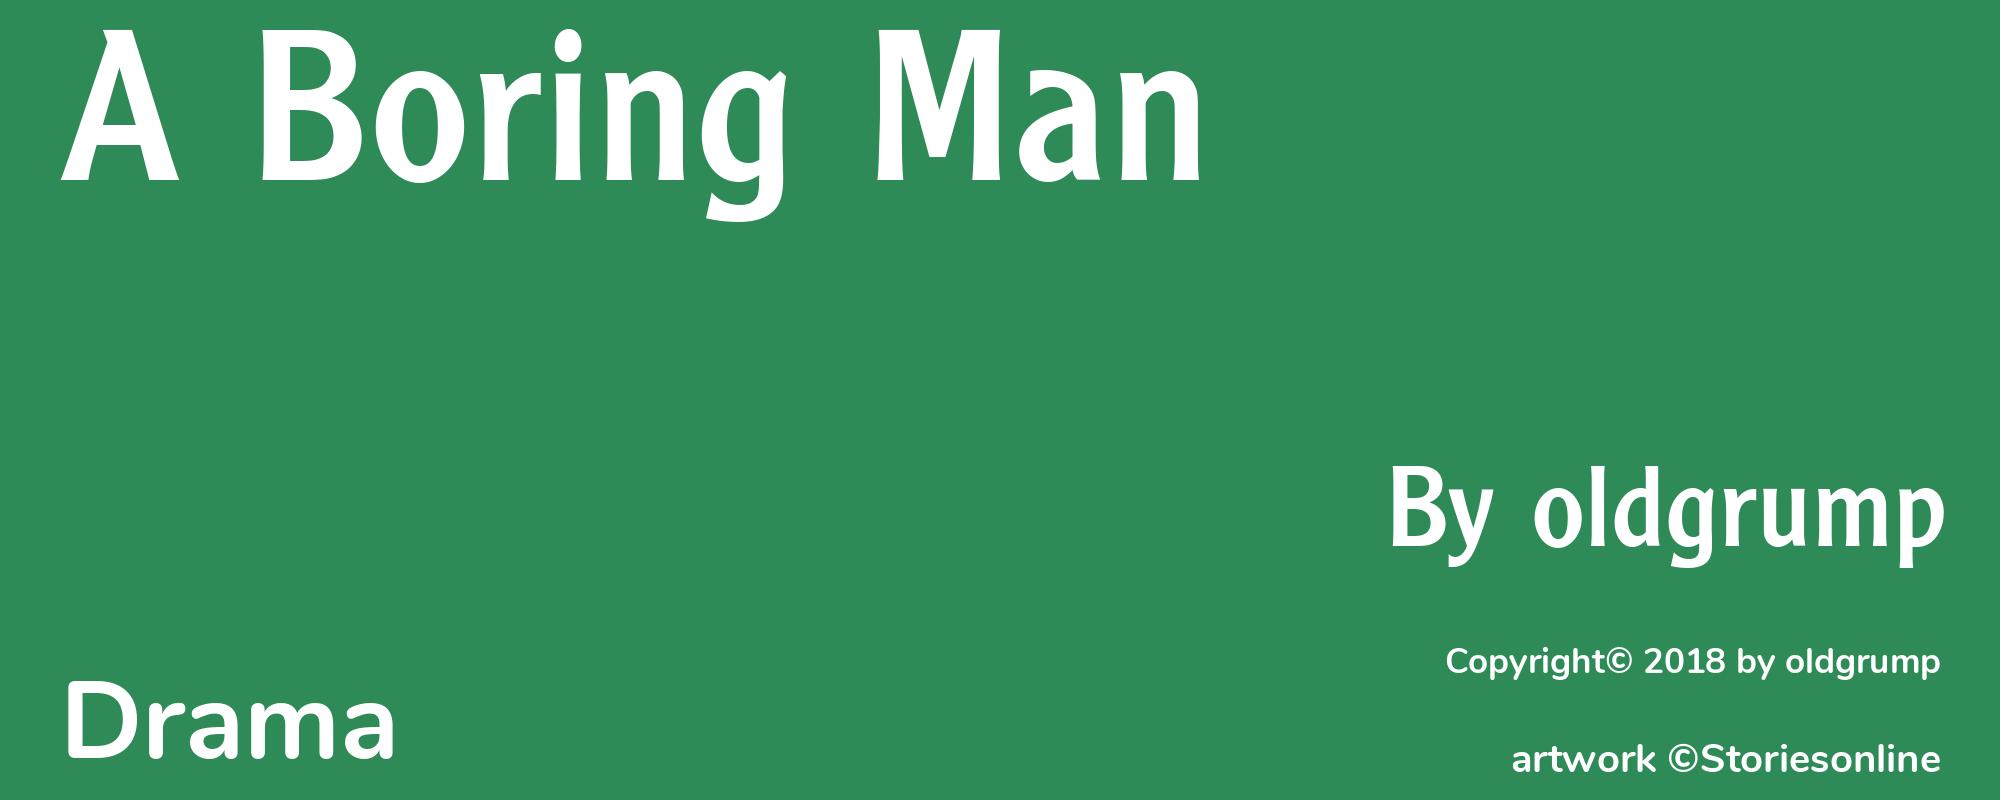 A Boring Man - Cover